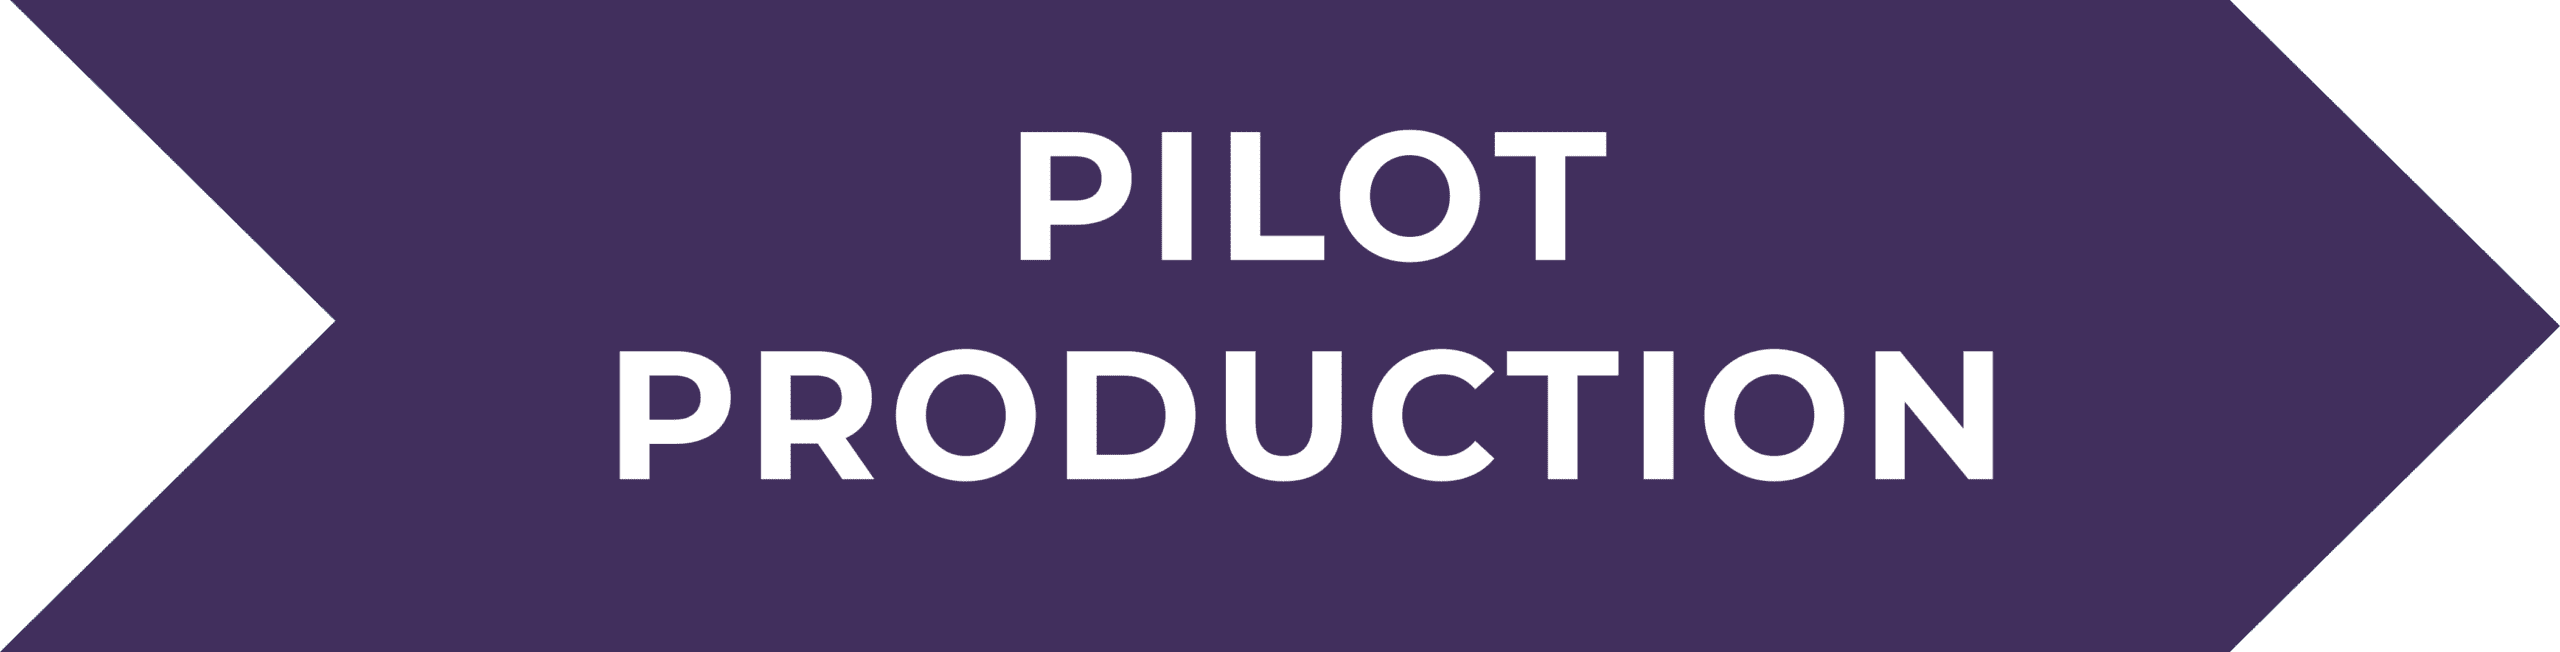 pruple pilot production